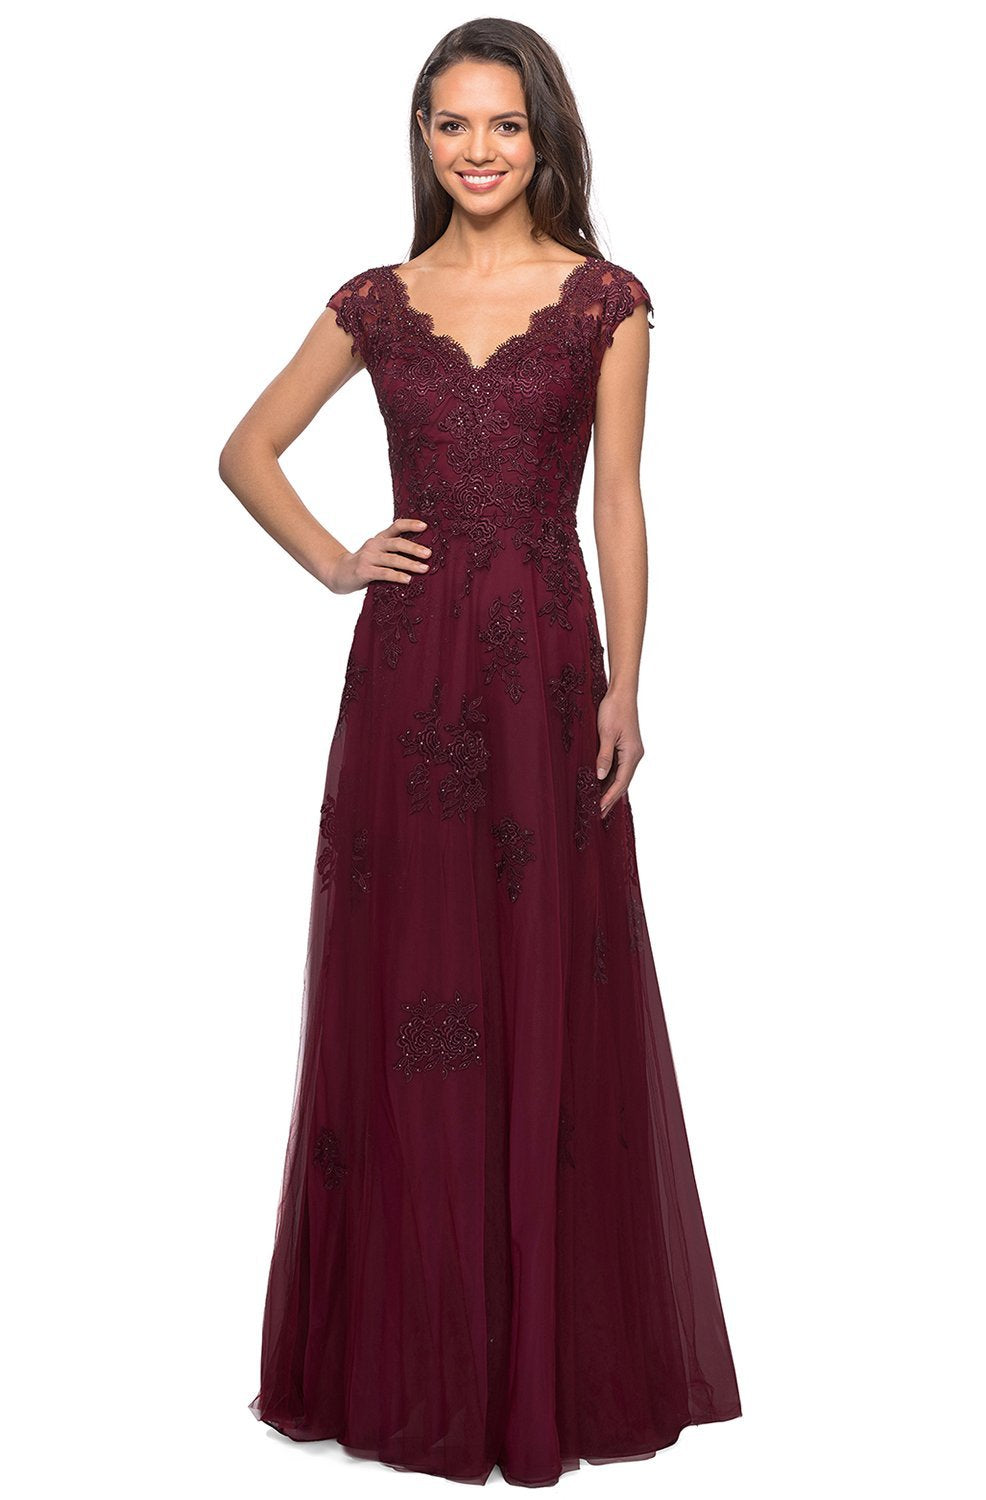 La Femme - Cap Sleeve V-Neck Floral Lace Appliqued Tulle Dress 26942SC In Red